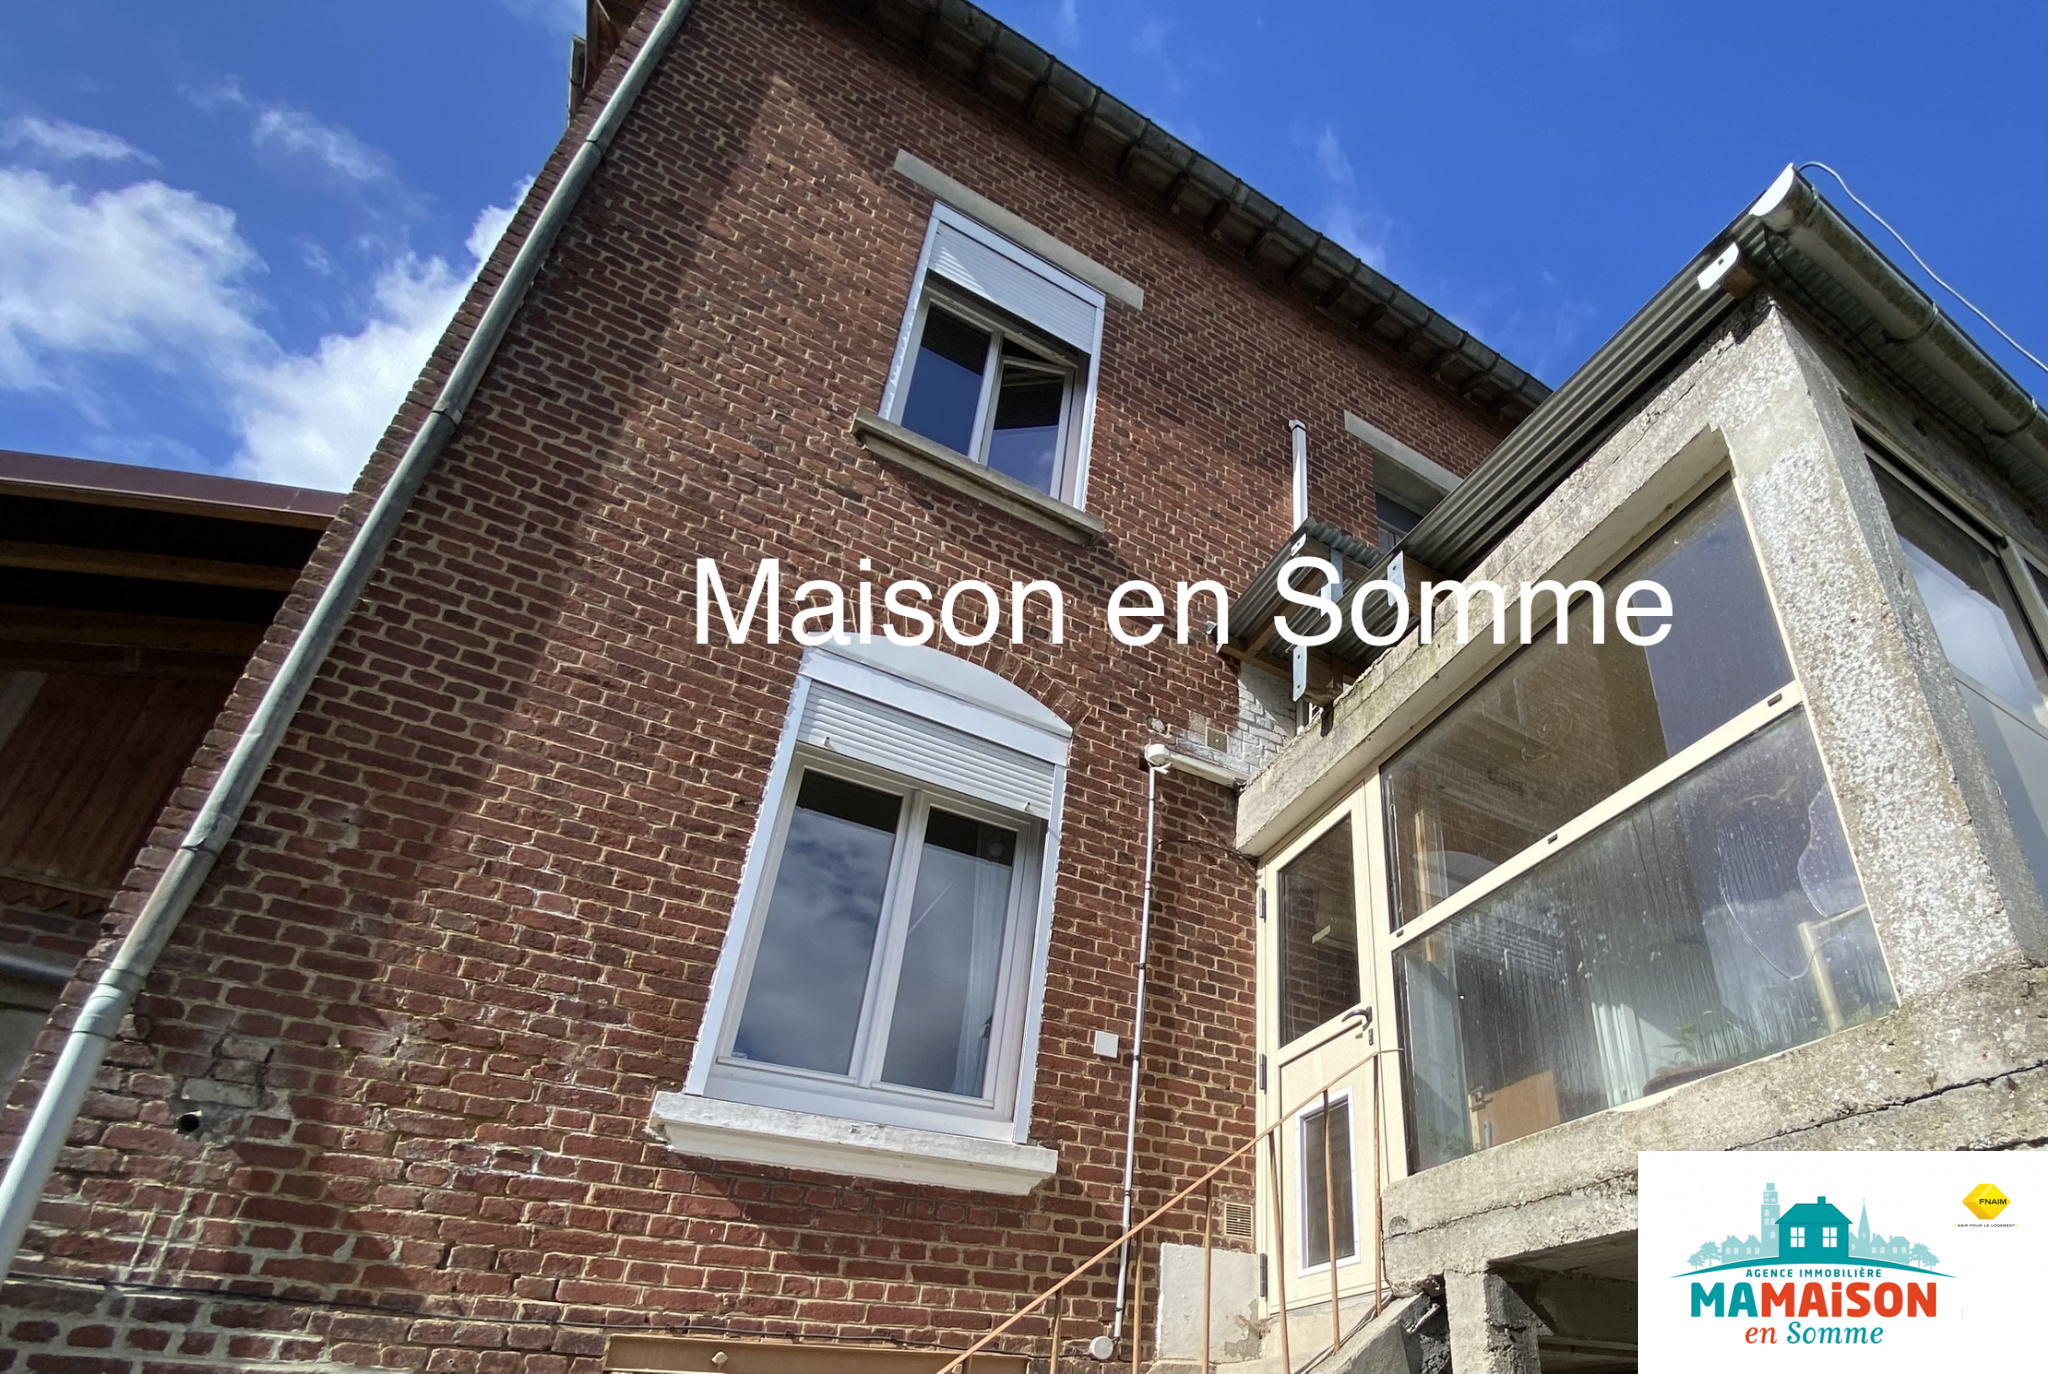 Immo80 – L'immobilier à Amiens et dans la Somme-Maison 75m2 2 chambres jardin studio atelier